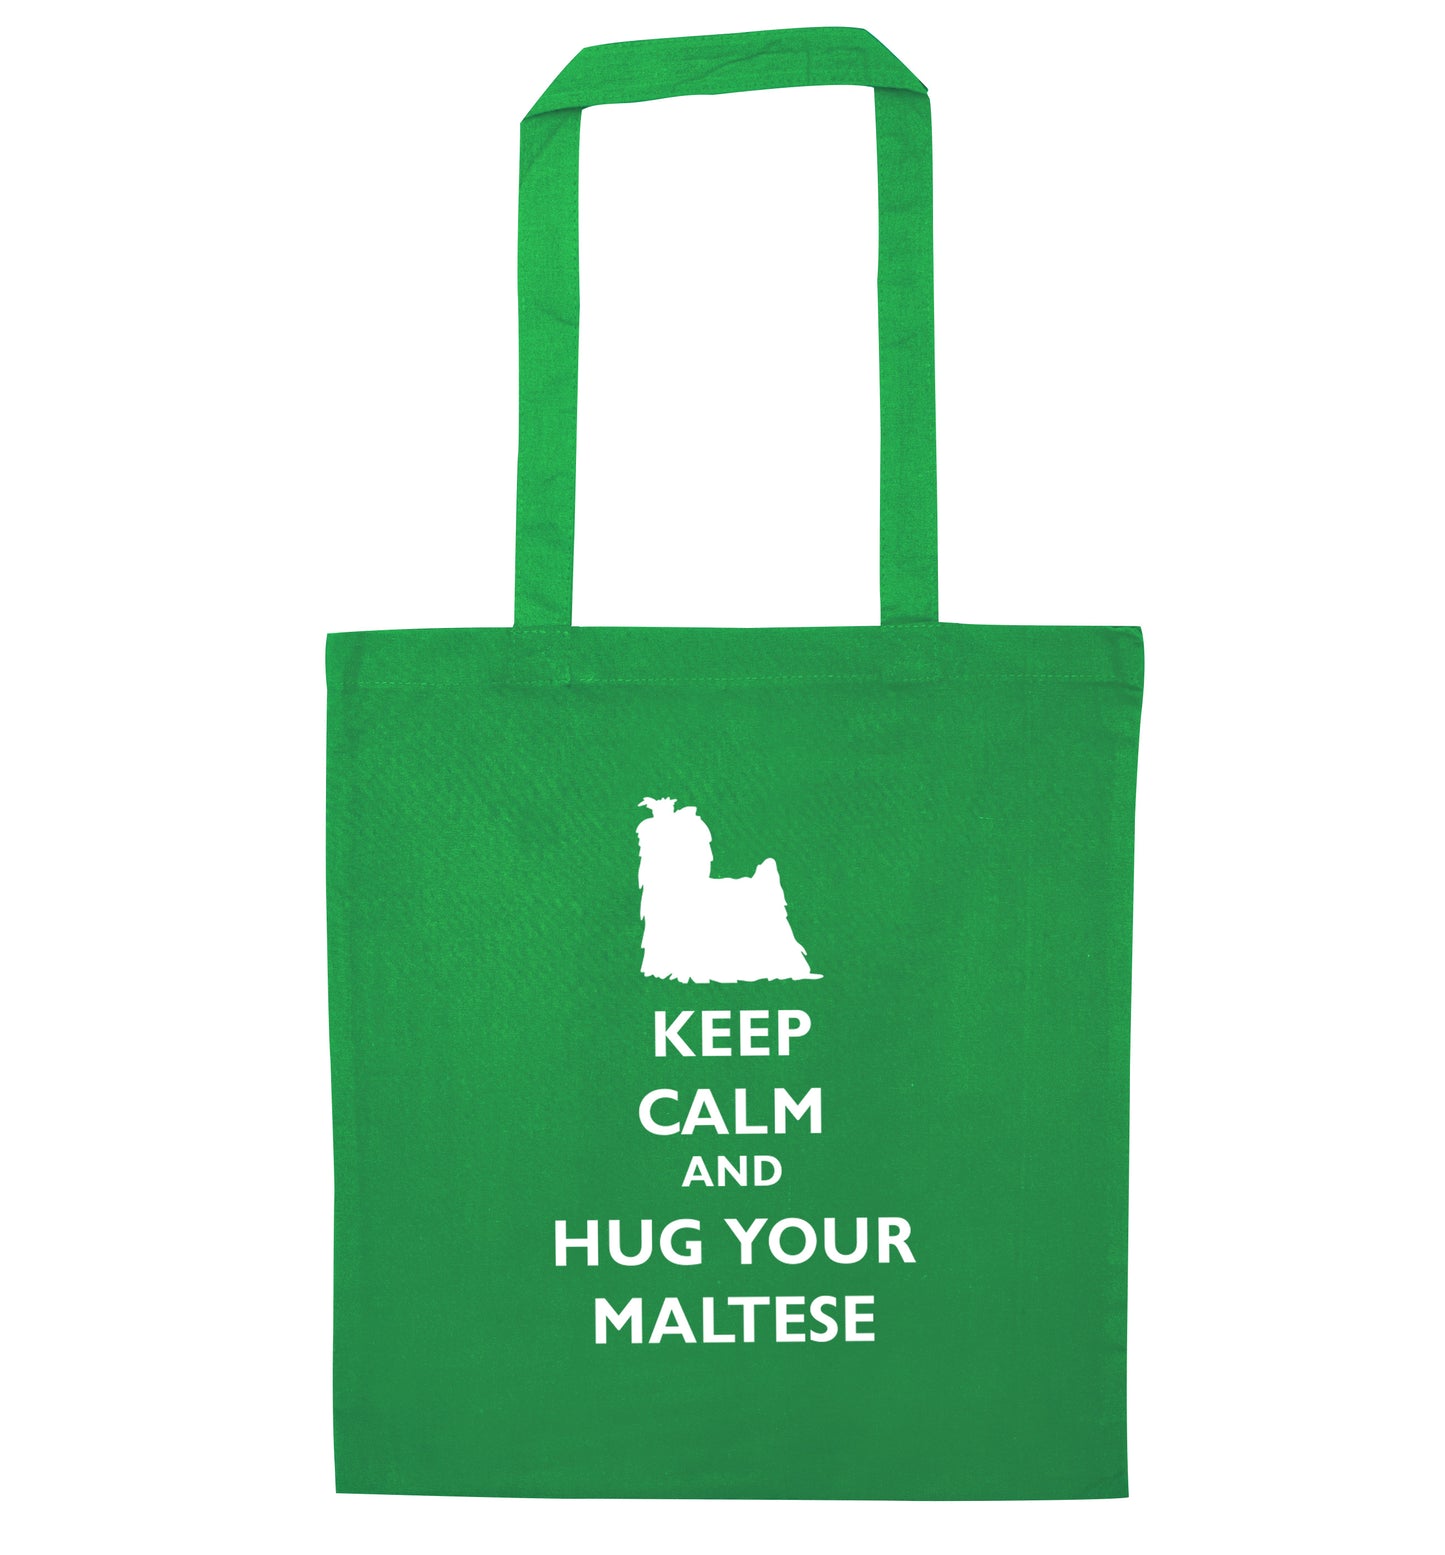 Keep calm and hug your maltese green tote bag